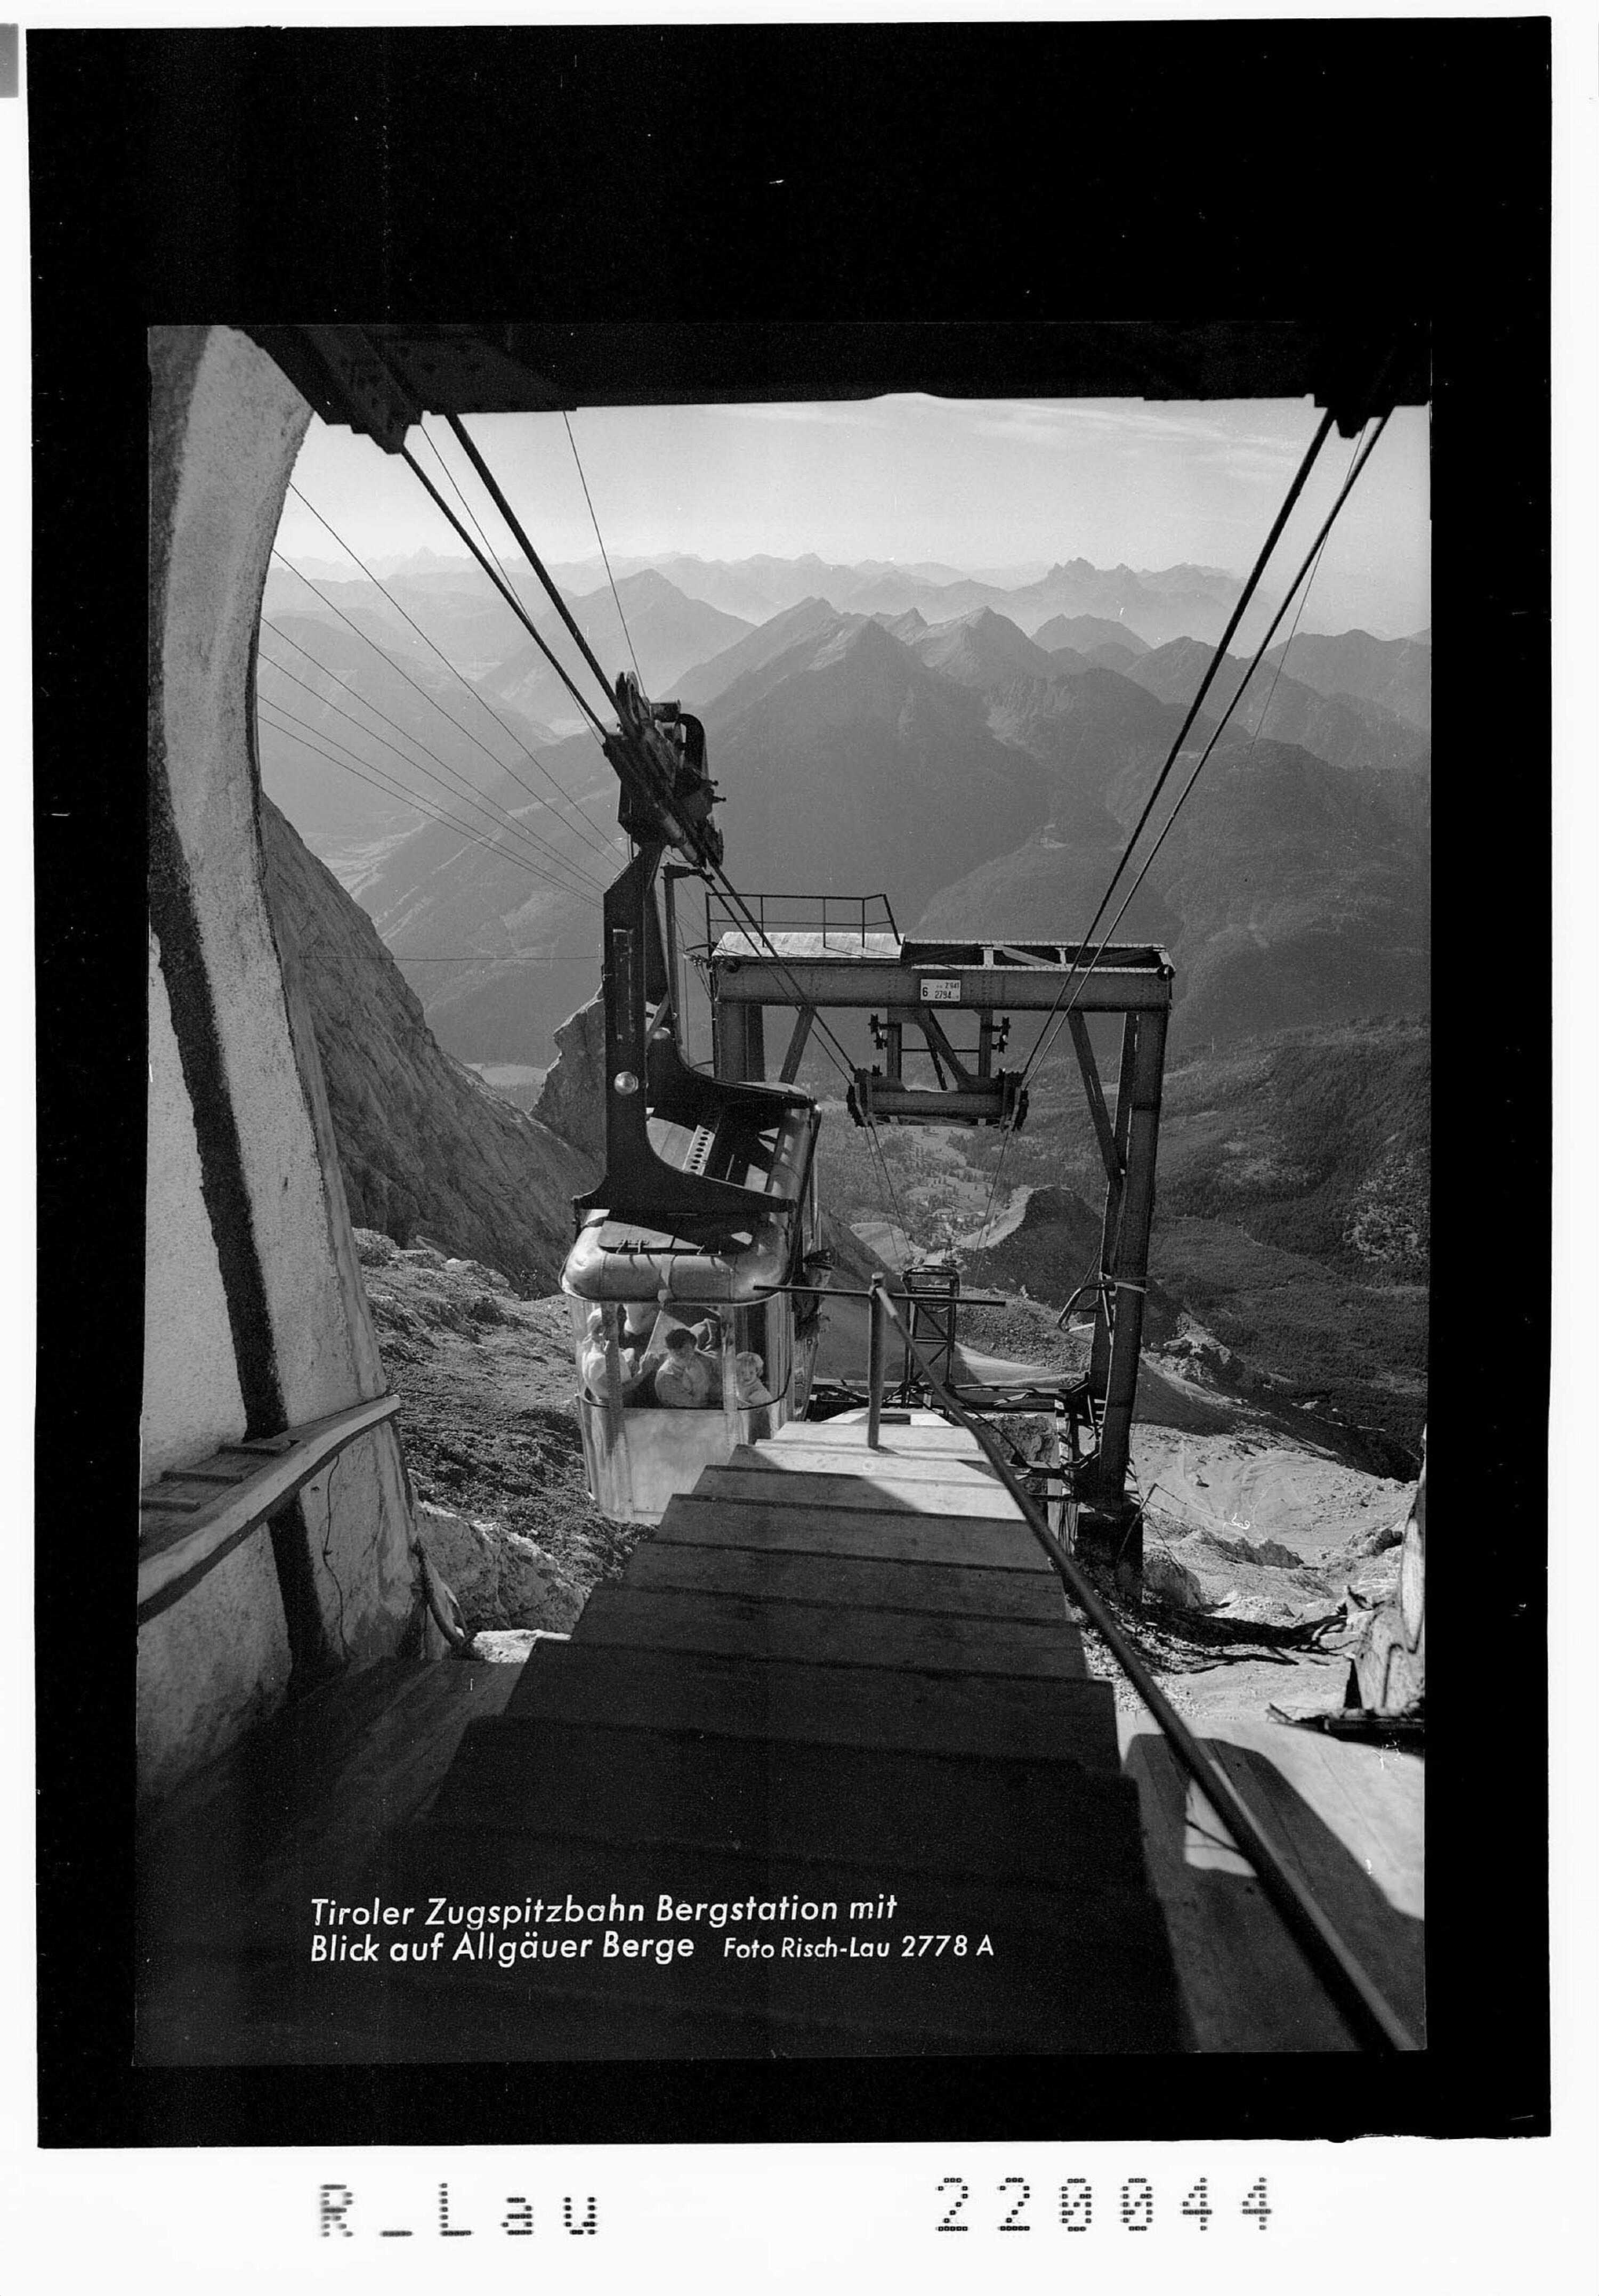 Tiroler Zugspitzbahn Bergstation mit Blick auf die Allgäuer Alpen></div>


    <hr>
    <div class=